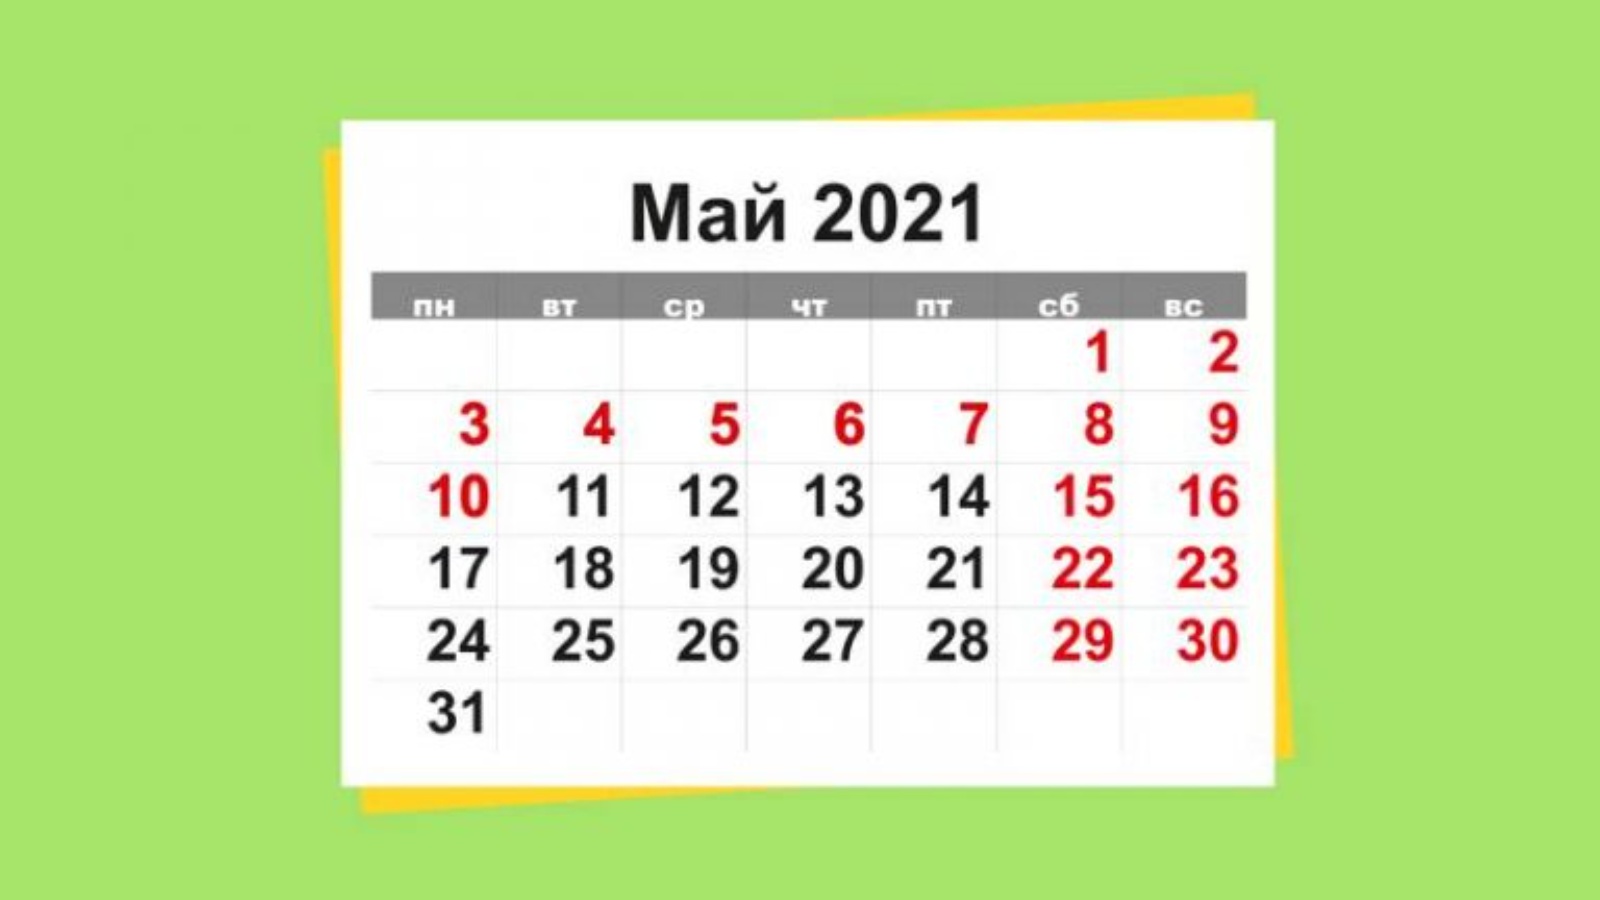 7 8 9 10 мая. Майские выходные. Майские праздники 2021. Майские праздники в 2021 году. Выходные на майские праздники 2021.